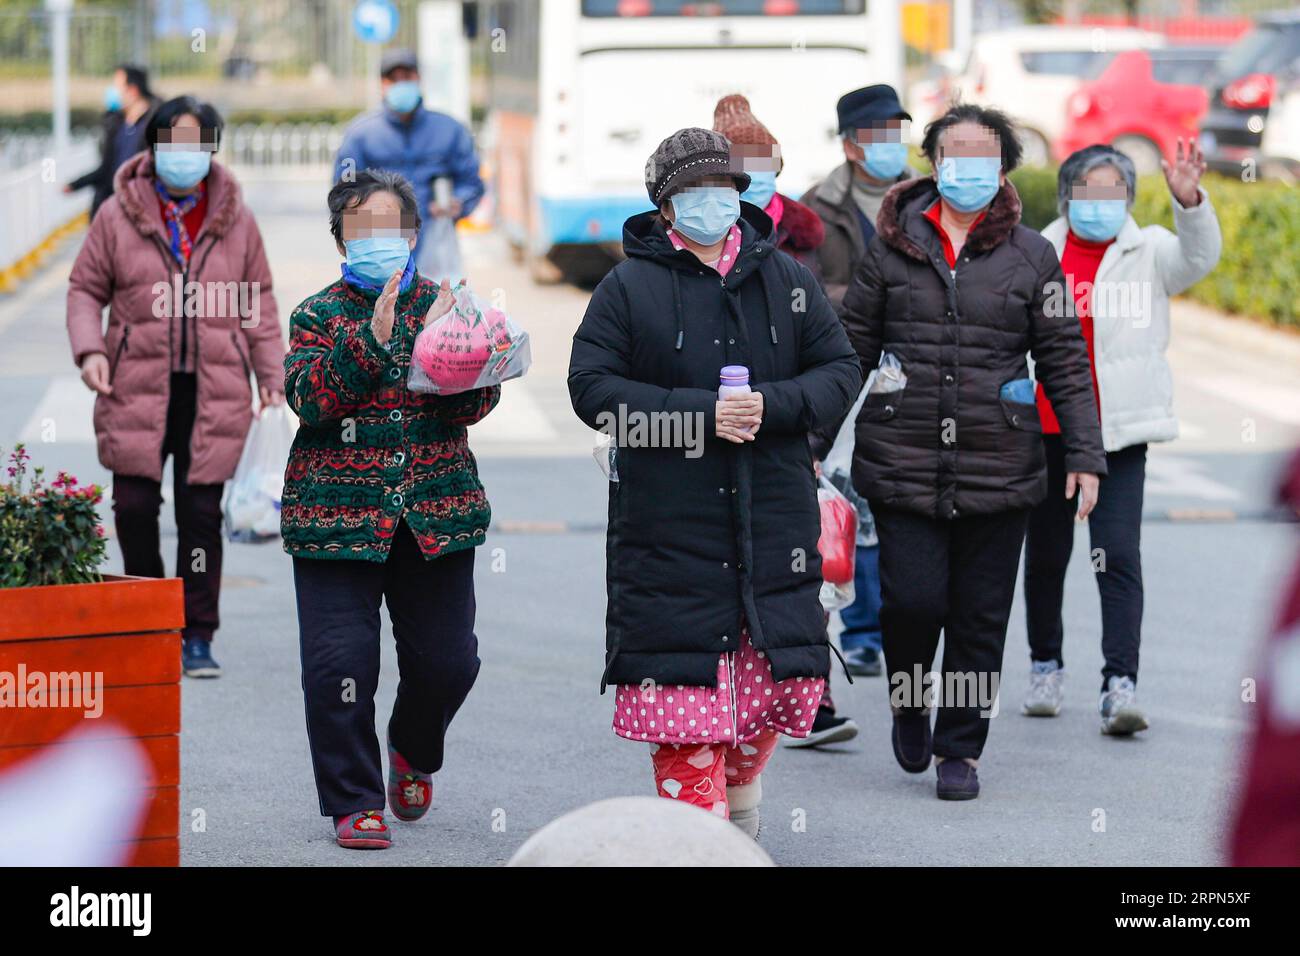 200223 -- WUHAN, 23 février 2020 -- des patients atteints de COVID-19 récupérés quittent le campus Zhongfaxincheng de l'hôpital de Tongji affilié à l'Université des sciences et technologies Huazhong à Wuhan, dans la province du Hubei du centre de la Chine, le 23 février 2020. Parmi les patients COVID-19 admis par le deuxième hôpital Xiangya de l’Université Central South de la province du Hunan, le premier lot de 11 patients présentant des symptômes sévères a été libéré du campus Zhongfaxincheng de l’hôpital Tongji affilié à l’Université Huazhong des sciences et technologies à Wuhan, avec le plus âgé de 82 ans et le plus jeune de 38 ans. CHINE-WUHAN- Banque D'Images